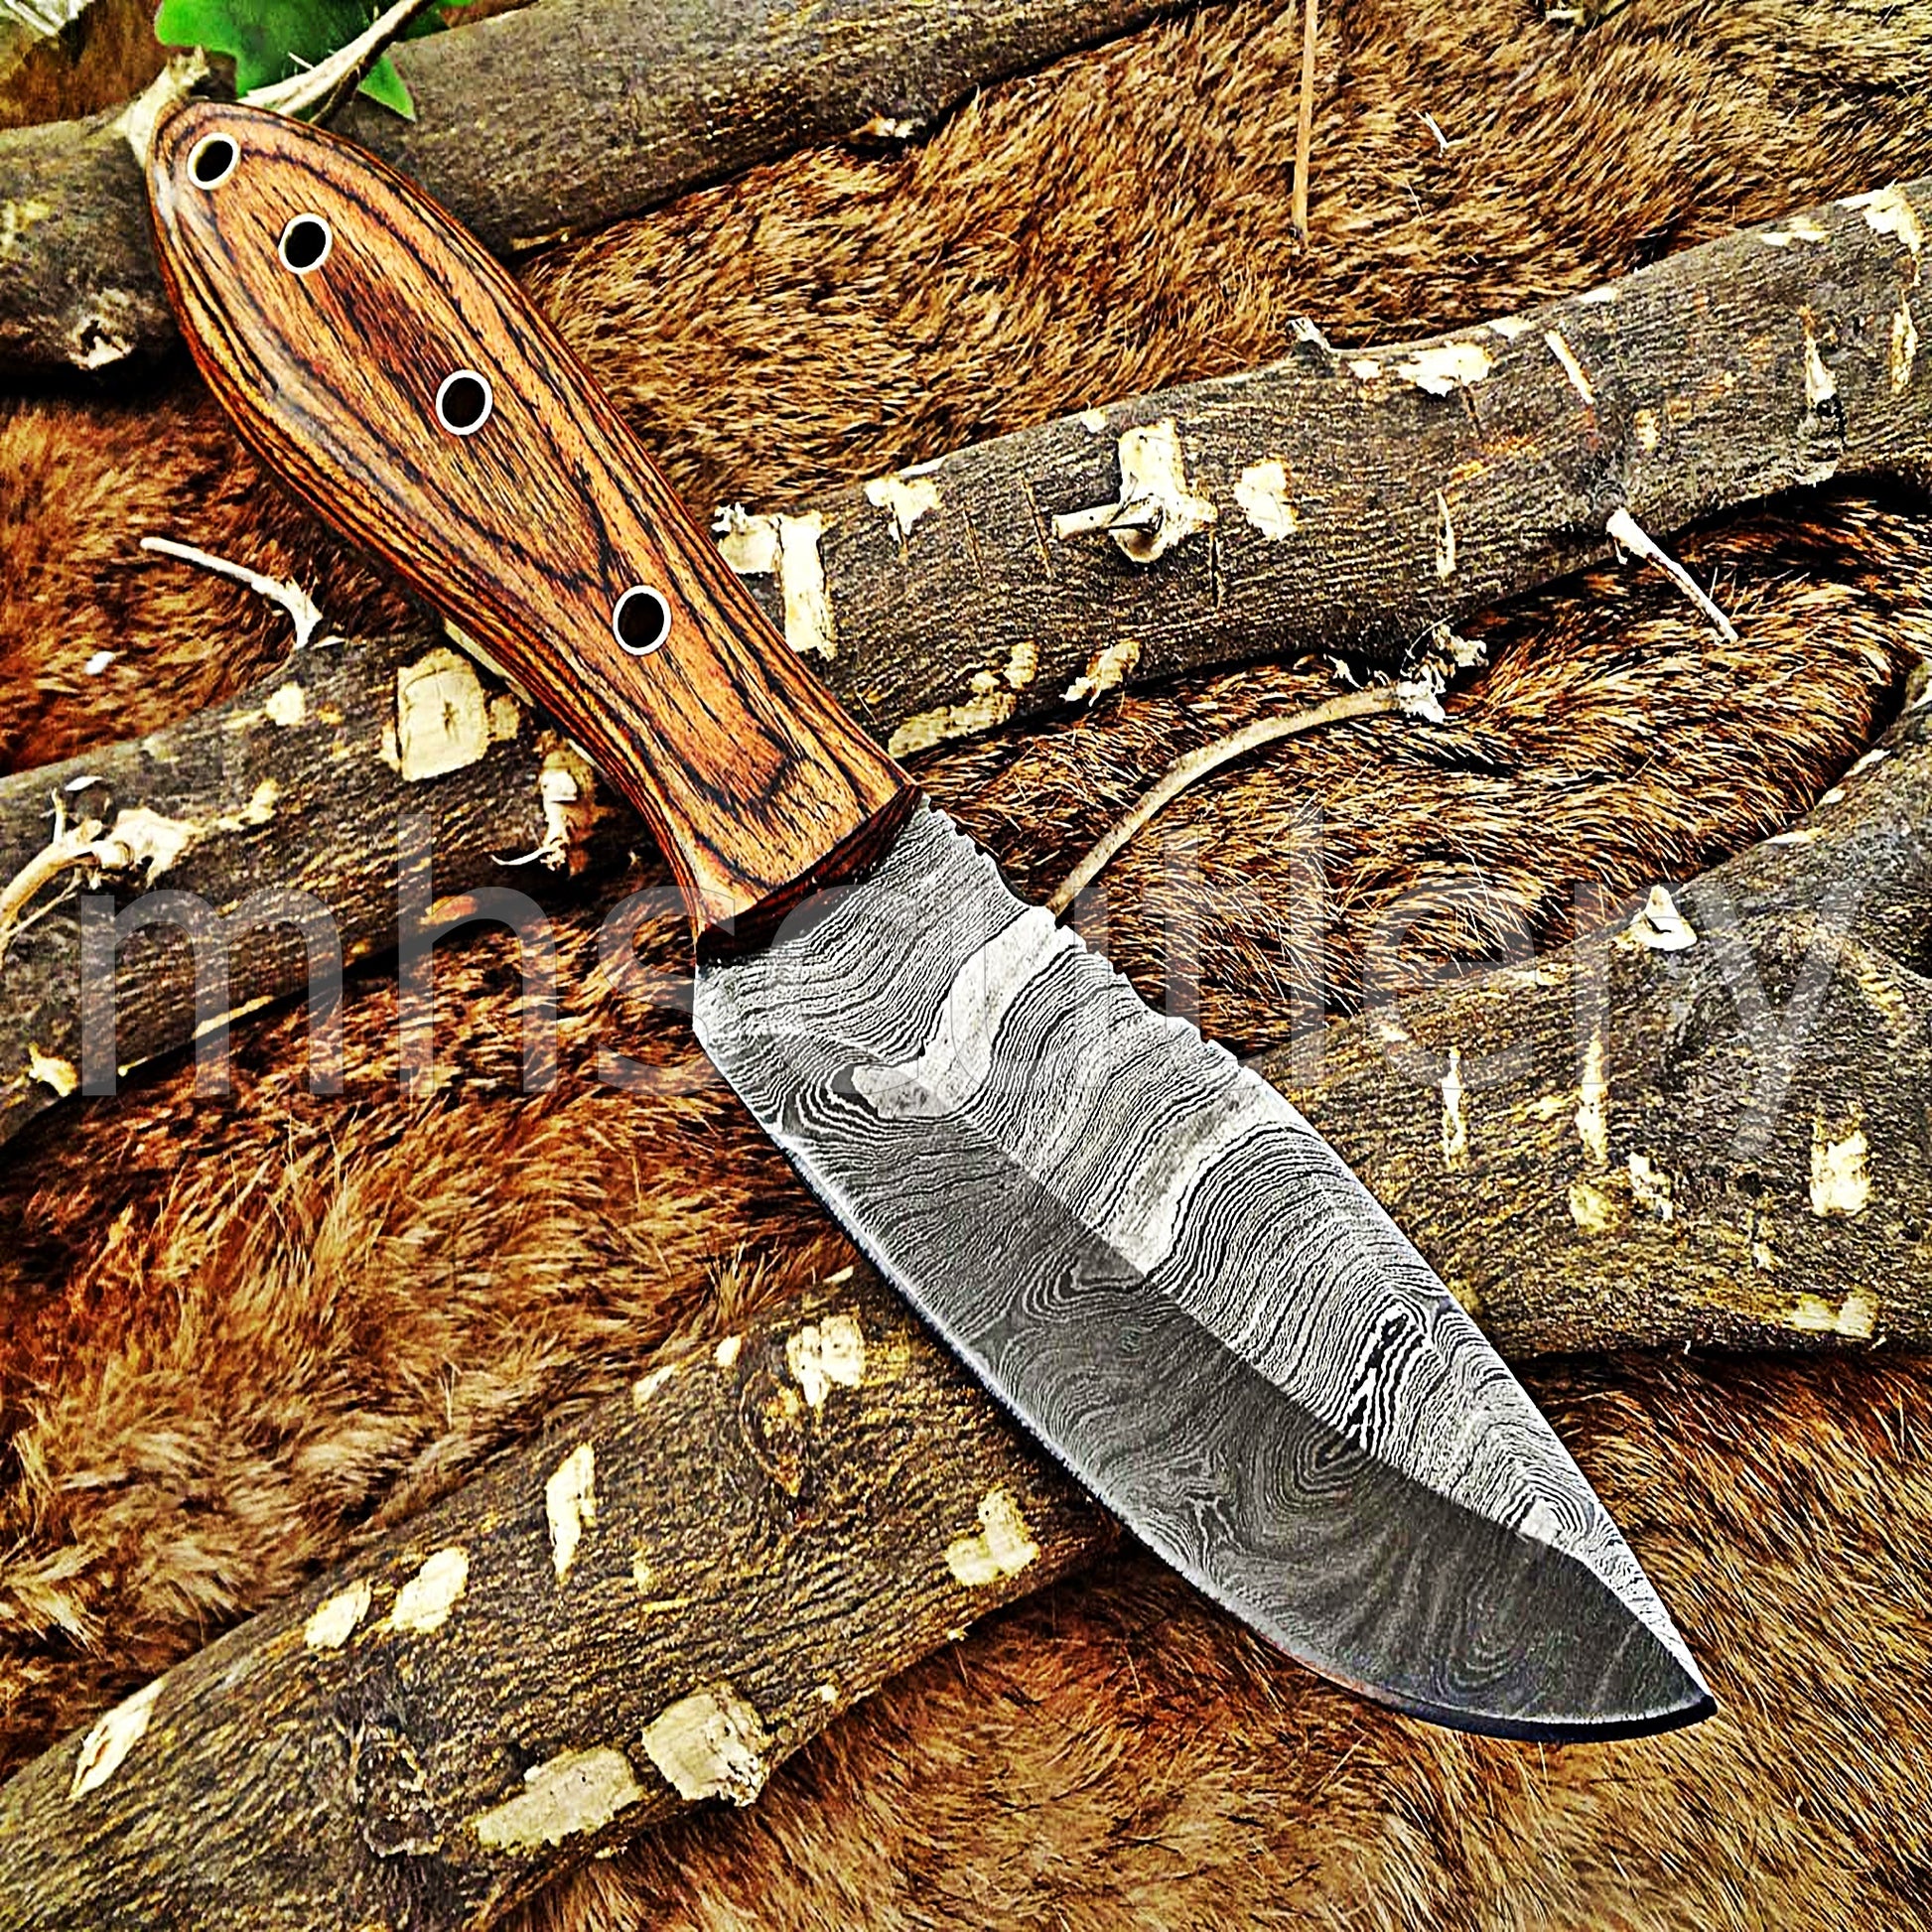 Handmade Damascus Steel Hunting Skinner Knife | mhscutlery